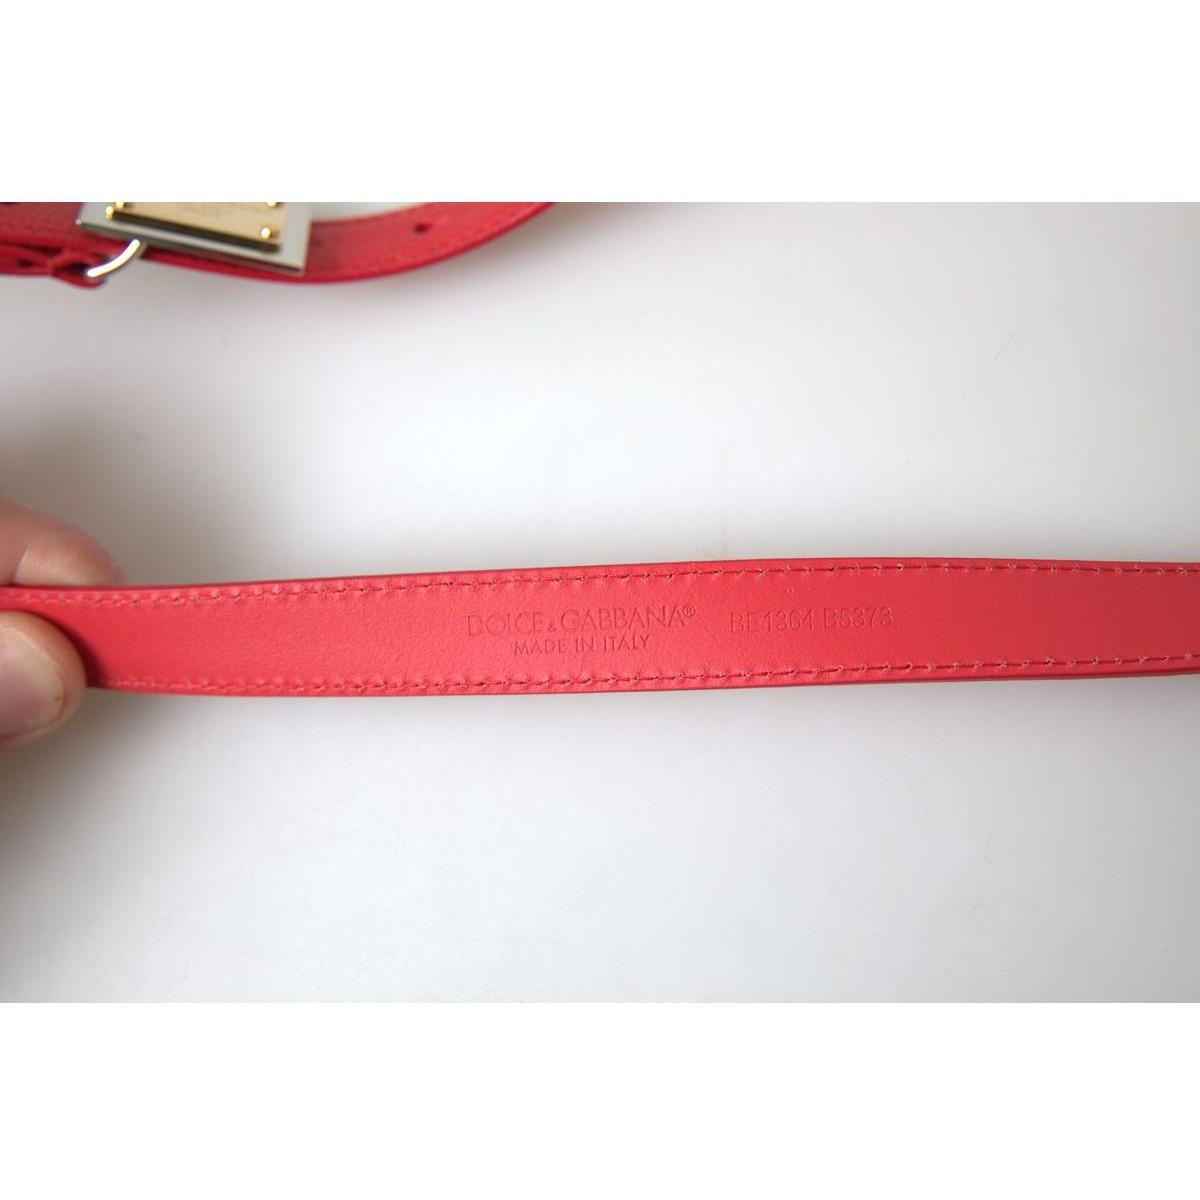 Dolce & Gabbana Elegant Red Leather Designer Belt red-leather-gold-engraved-metal-buckle-belt 465A5242-scaled-ea70d240-a98.jpg